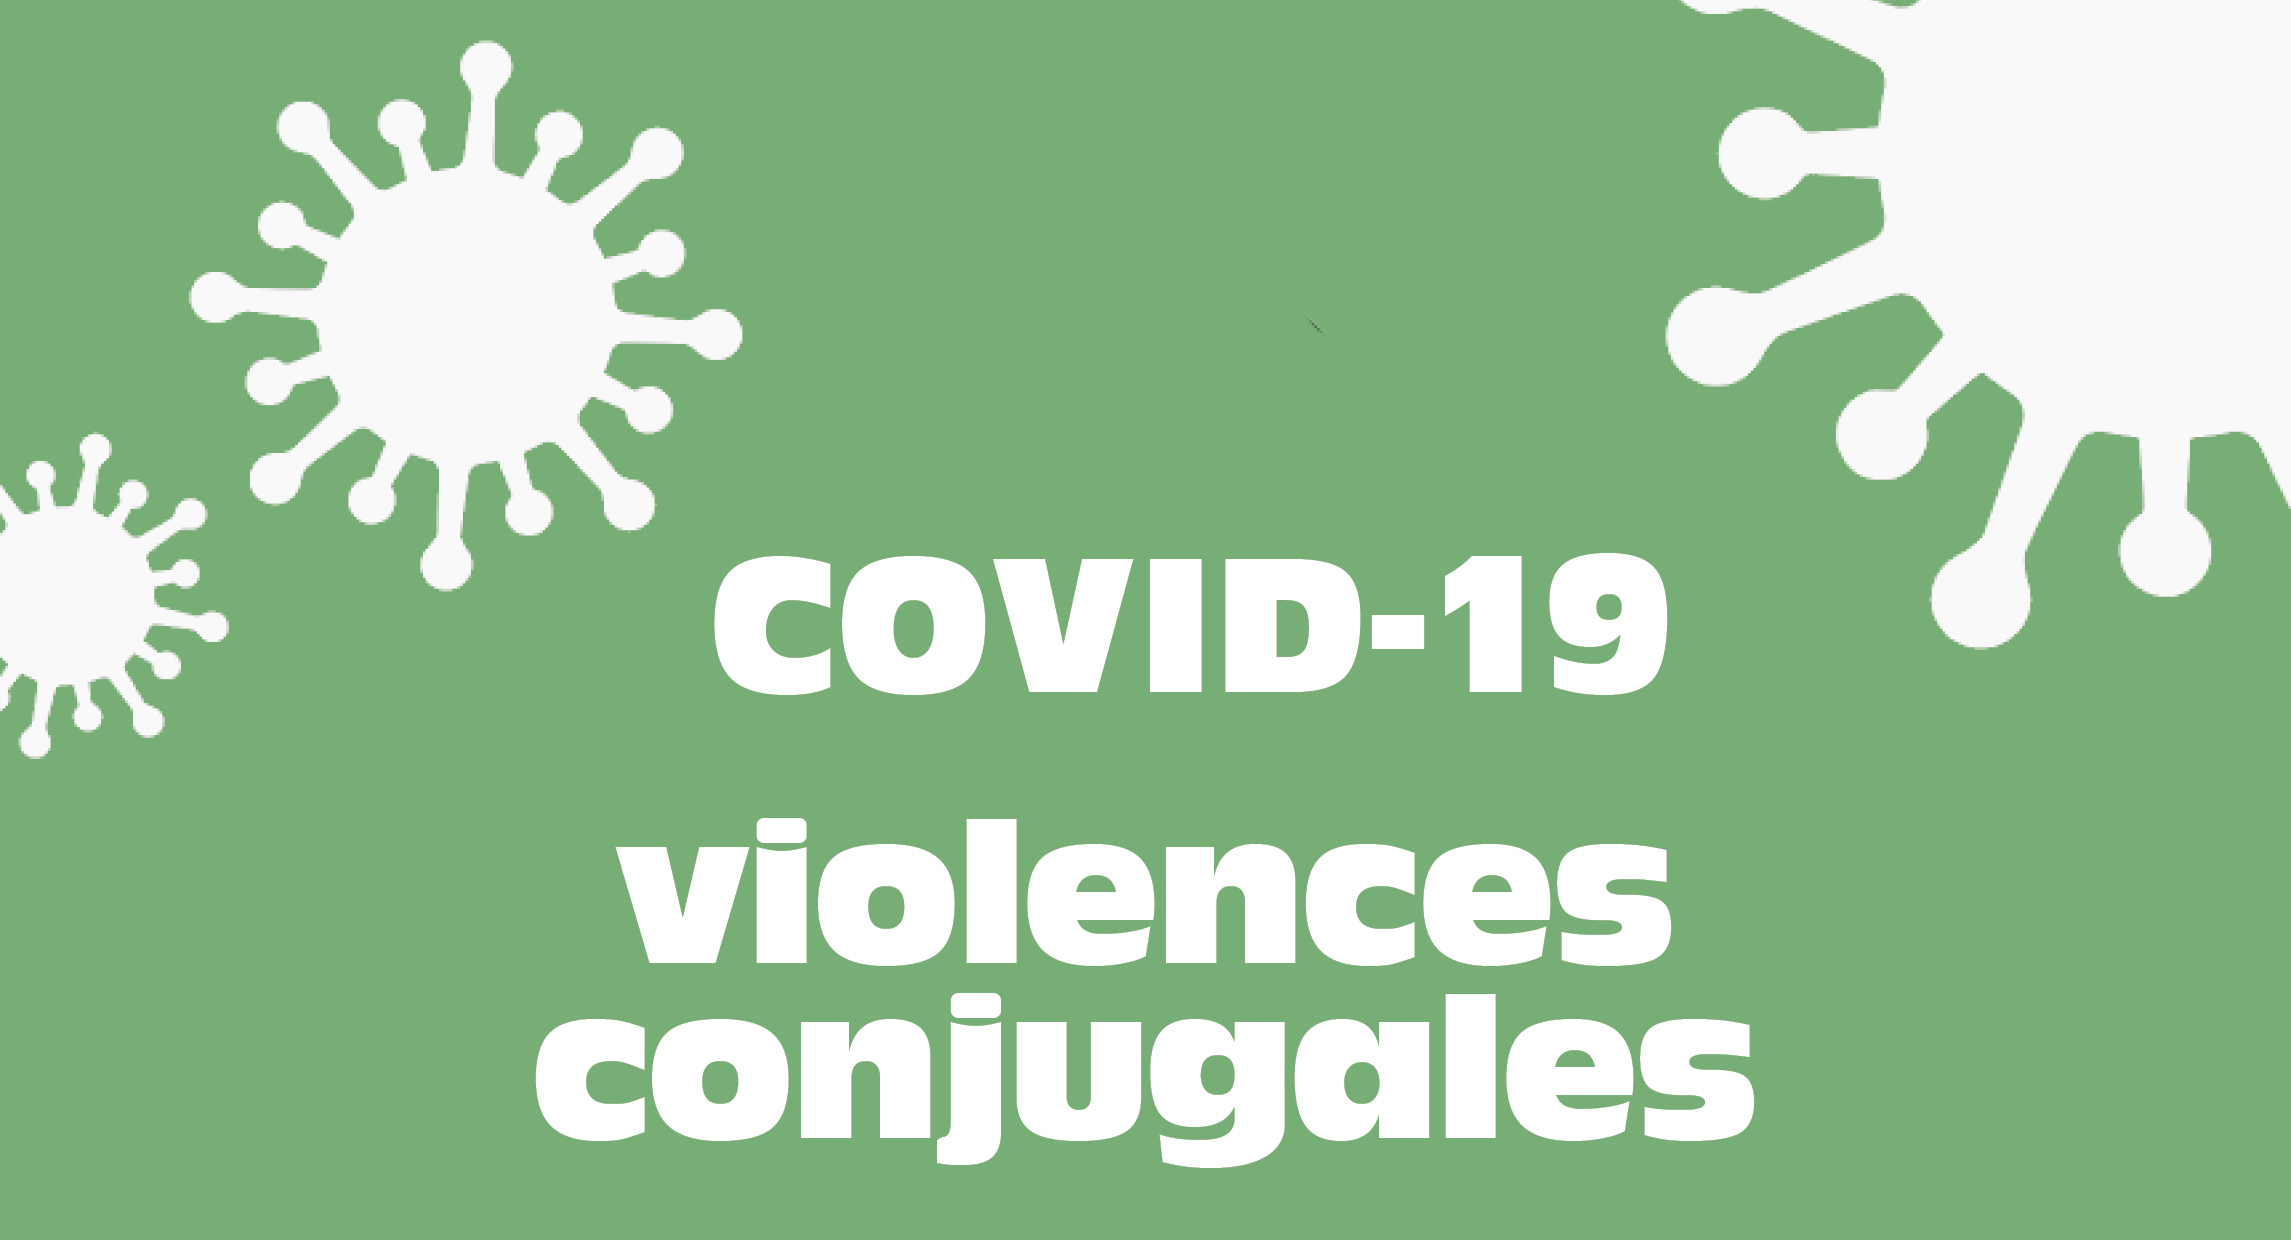 COVID 19 violences conjugales